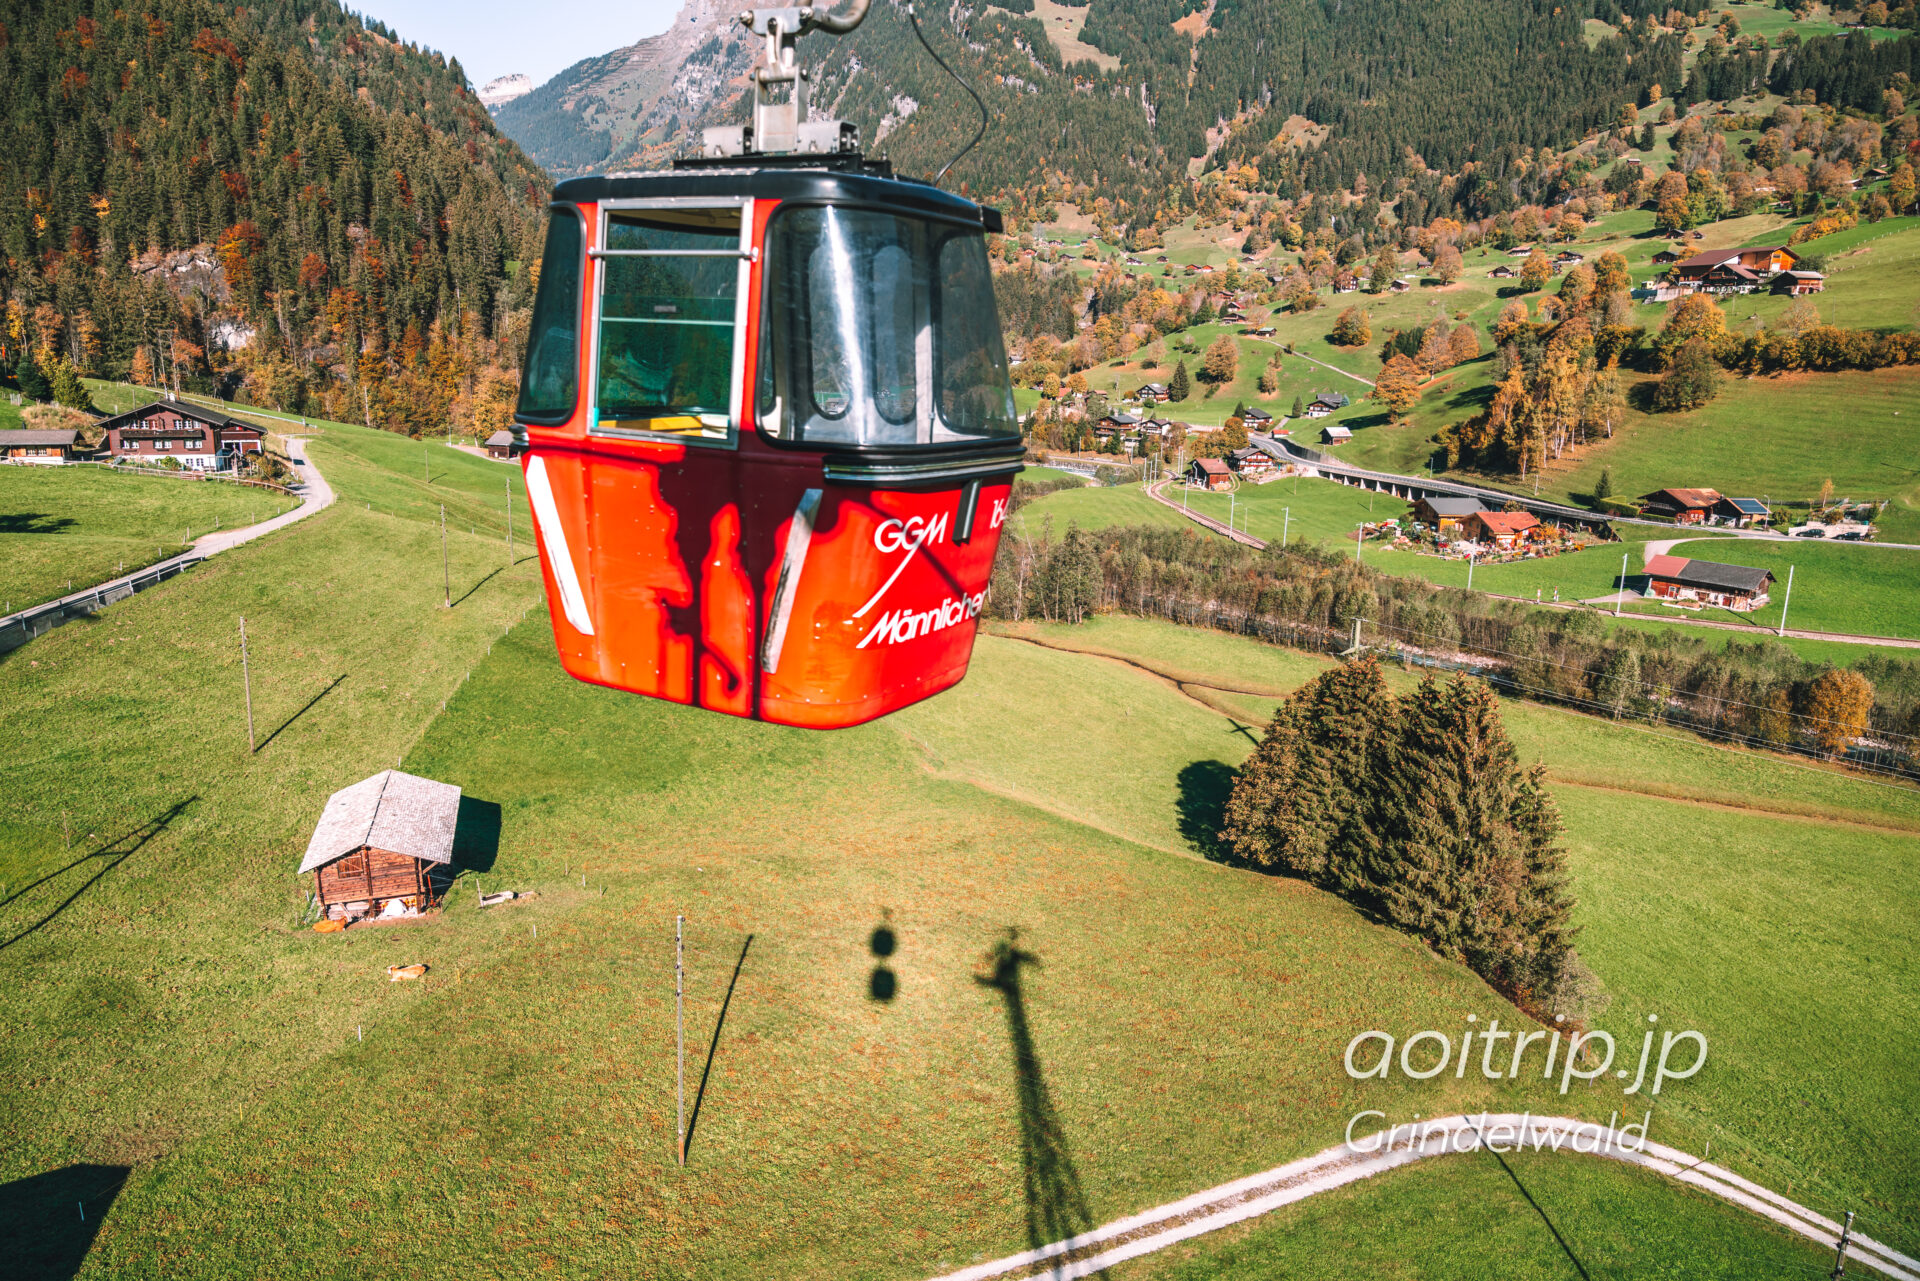 Grindelwald-Männlichen Gondola Cableway